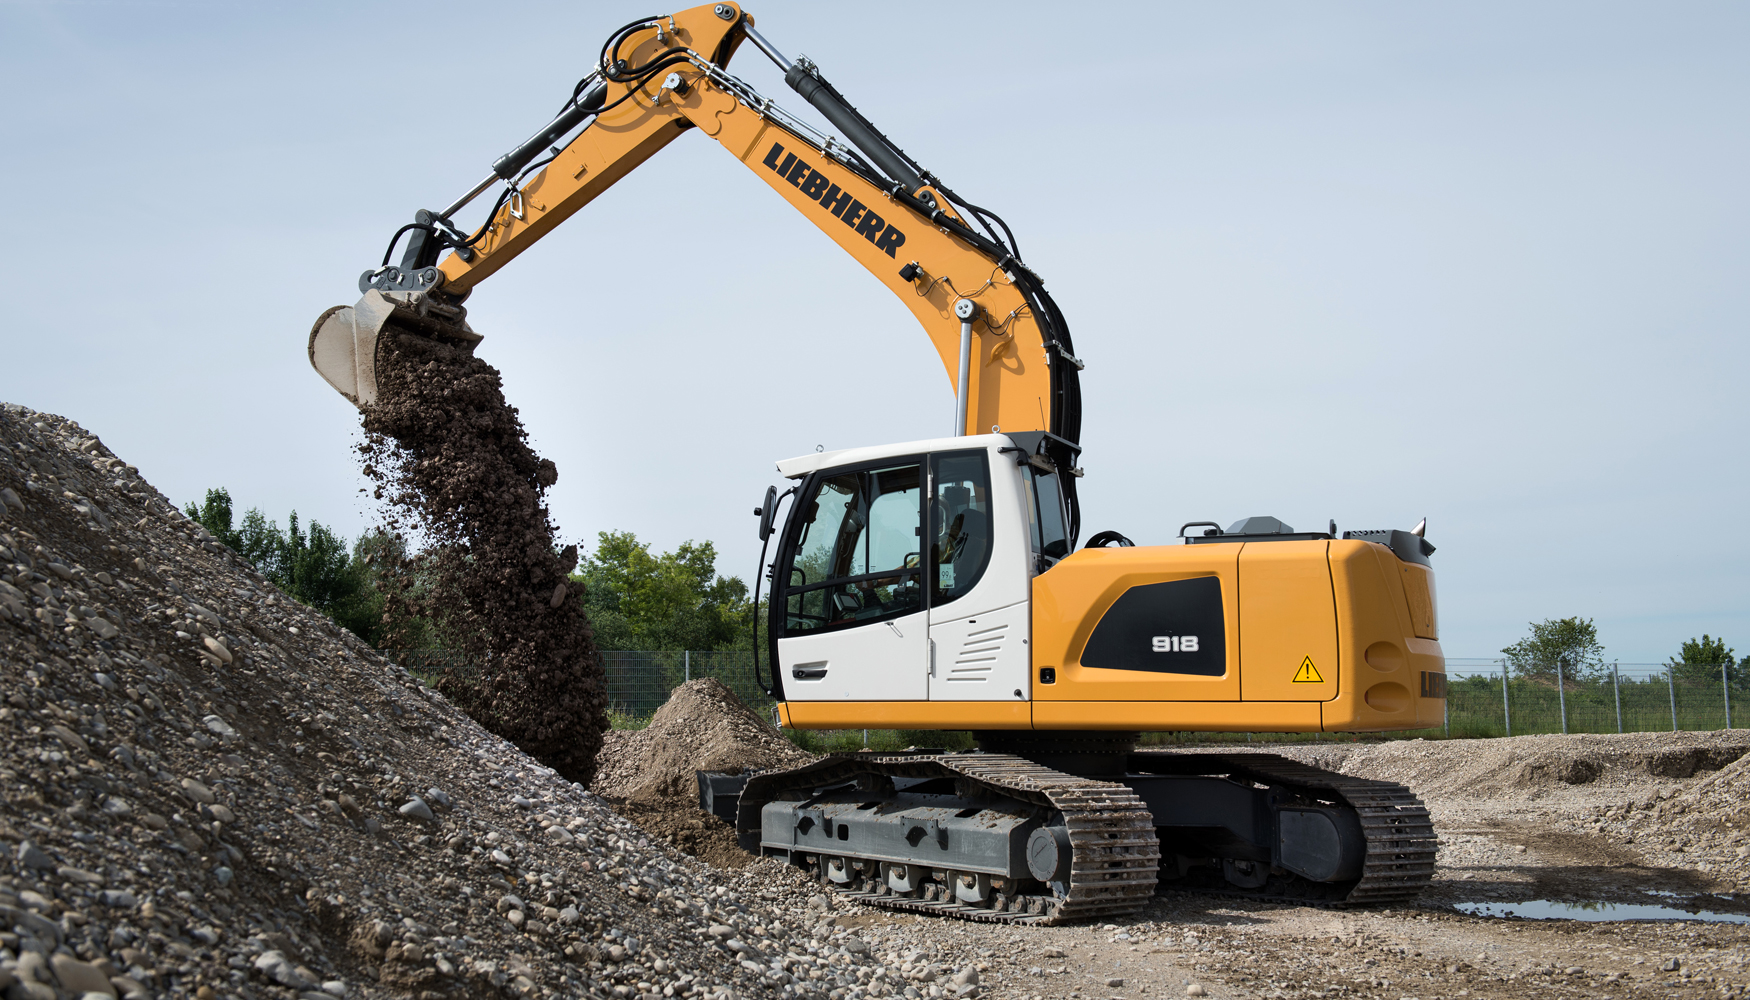 La excavadora sobre cadenas Liebherr R 918 es idnea para aplicaciones como el movimiento de tierras...